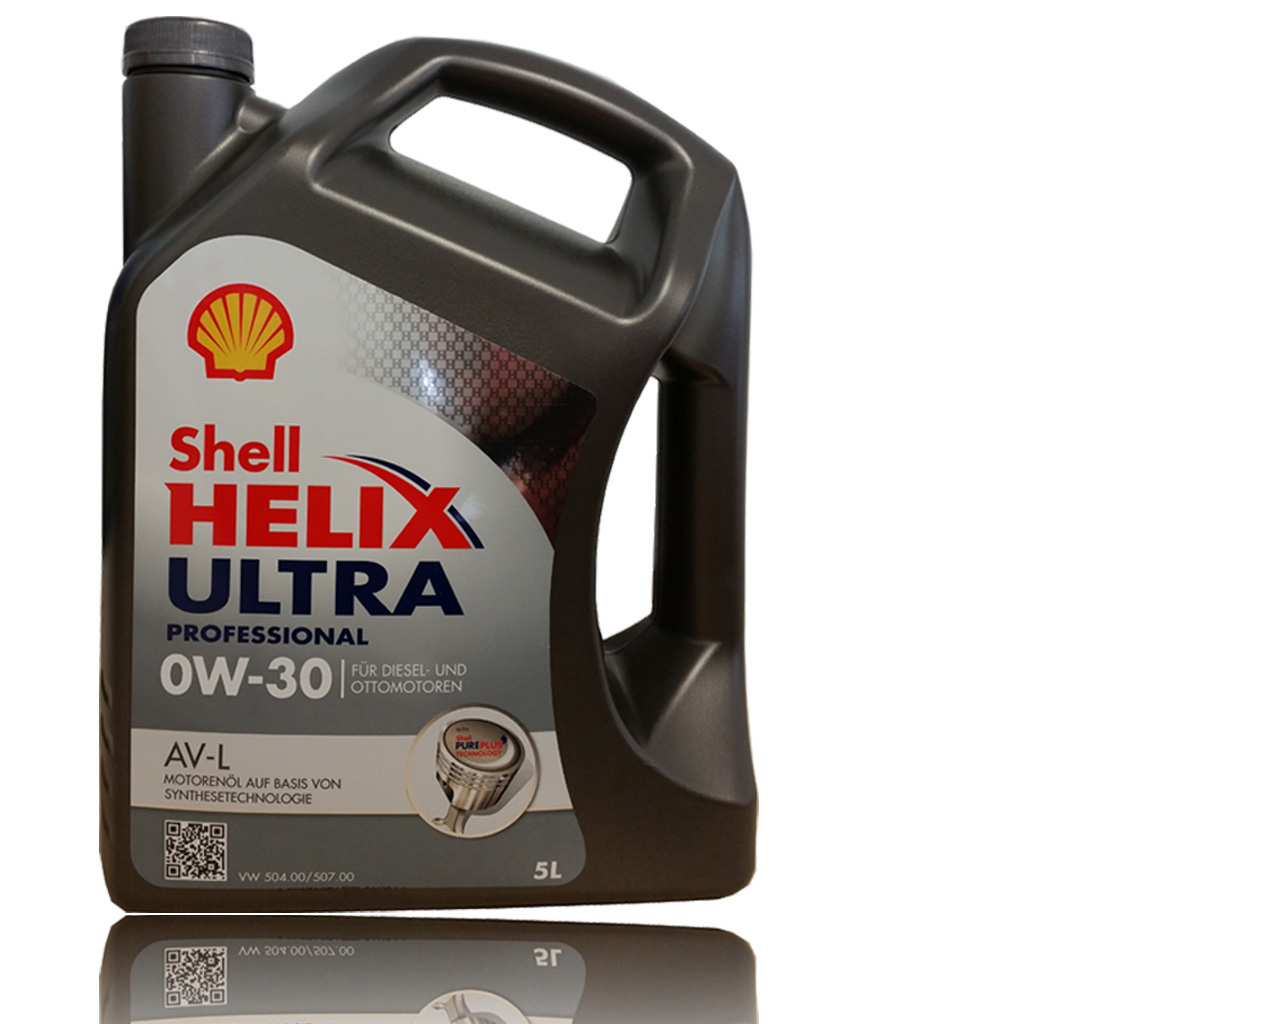 Масло 0w30 504 507. Helix Ultra professional av-l 0w-30. Shell Helix Ultra 0w-30 504/507. Shell Helix Ultra av 0w-30. VW 504.00/507.00 Shell.